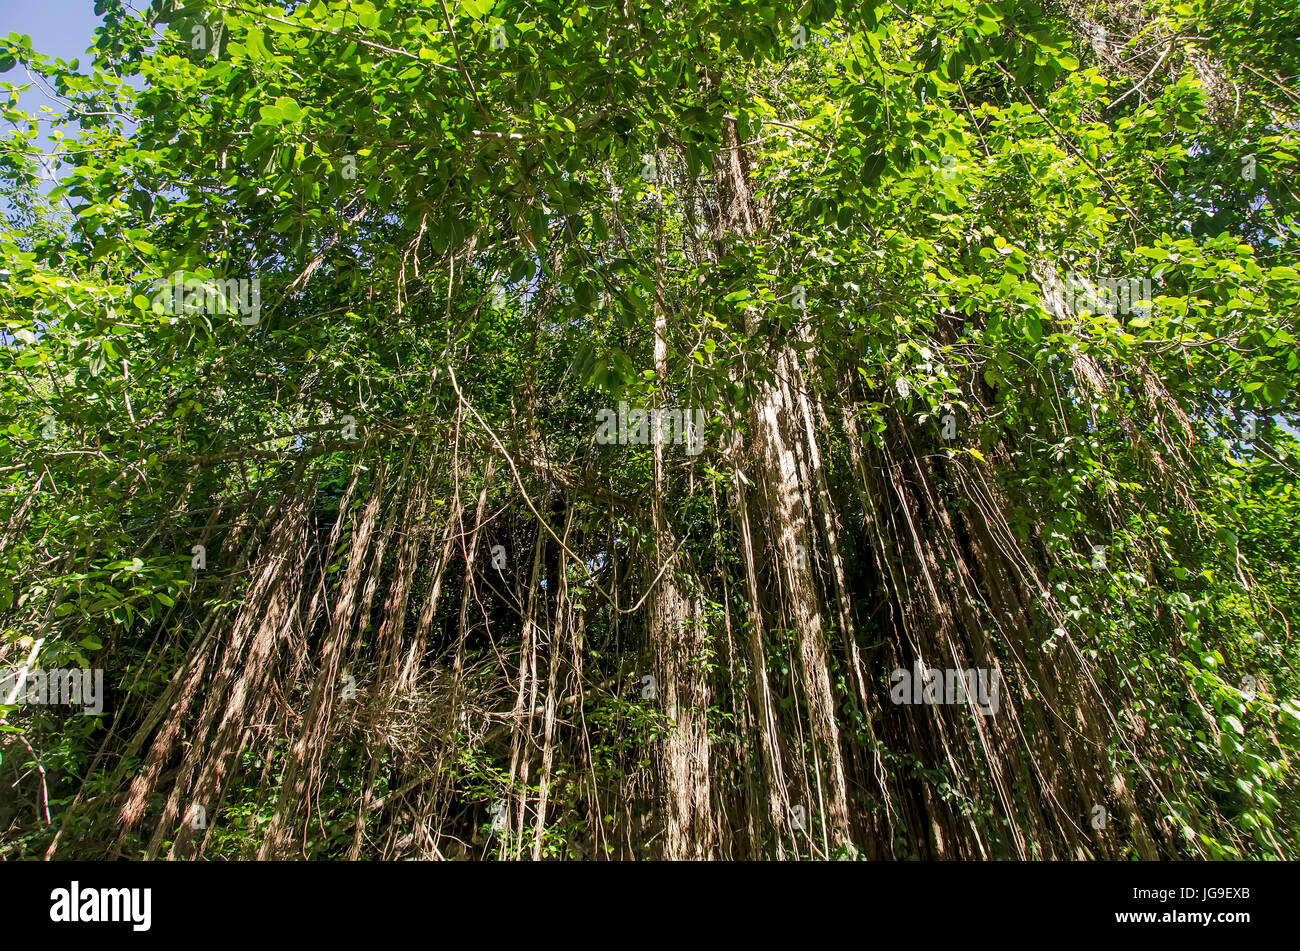 Barbado higuera árbol nacional de Barbados Foto de stock